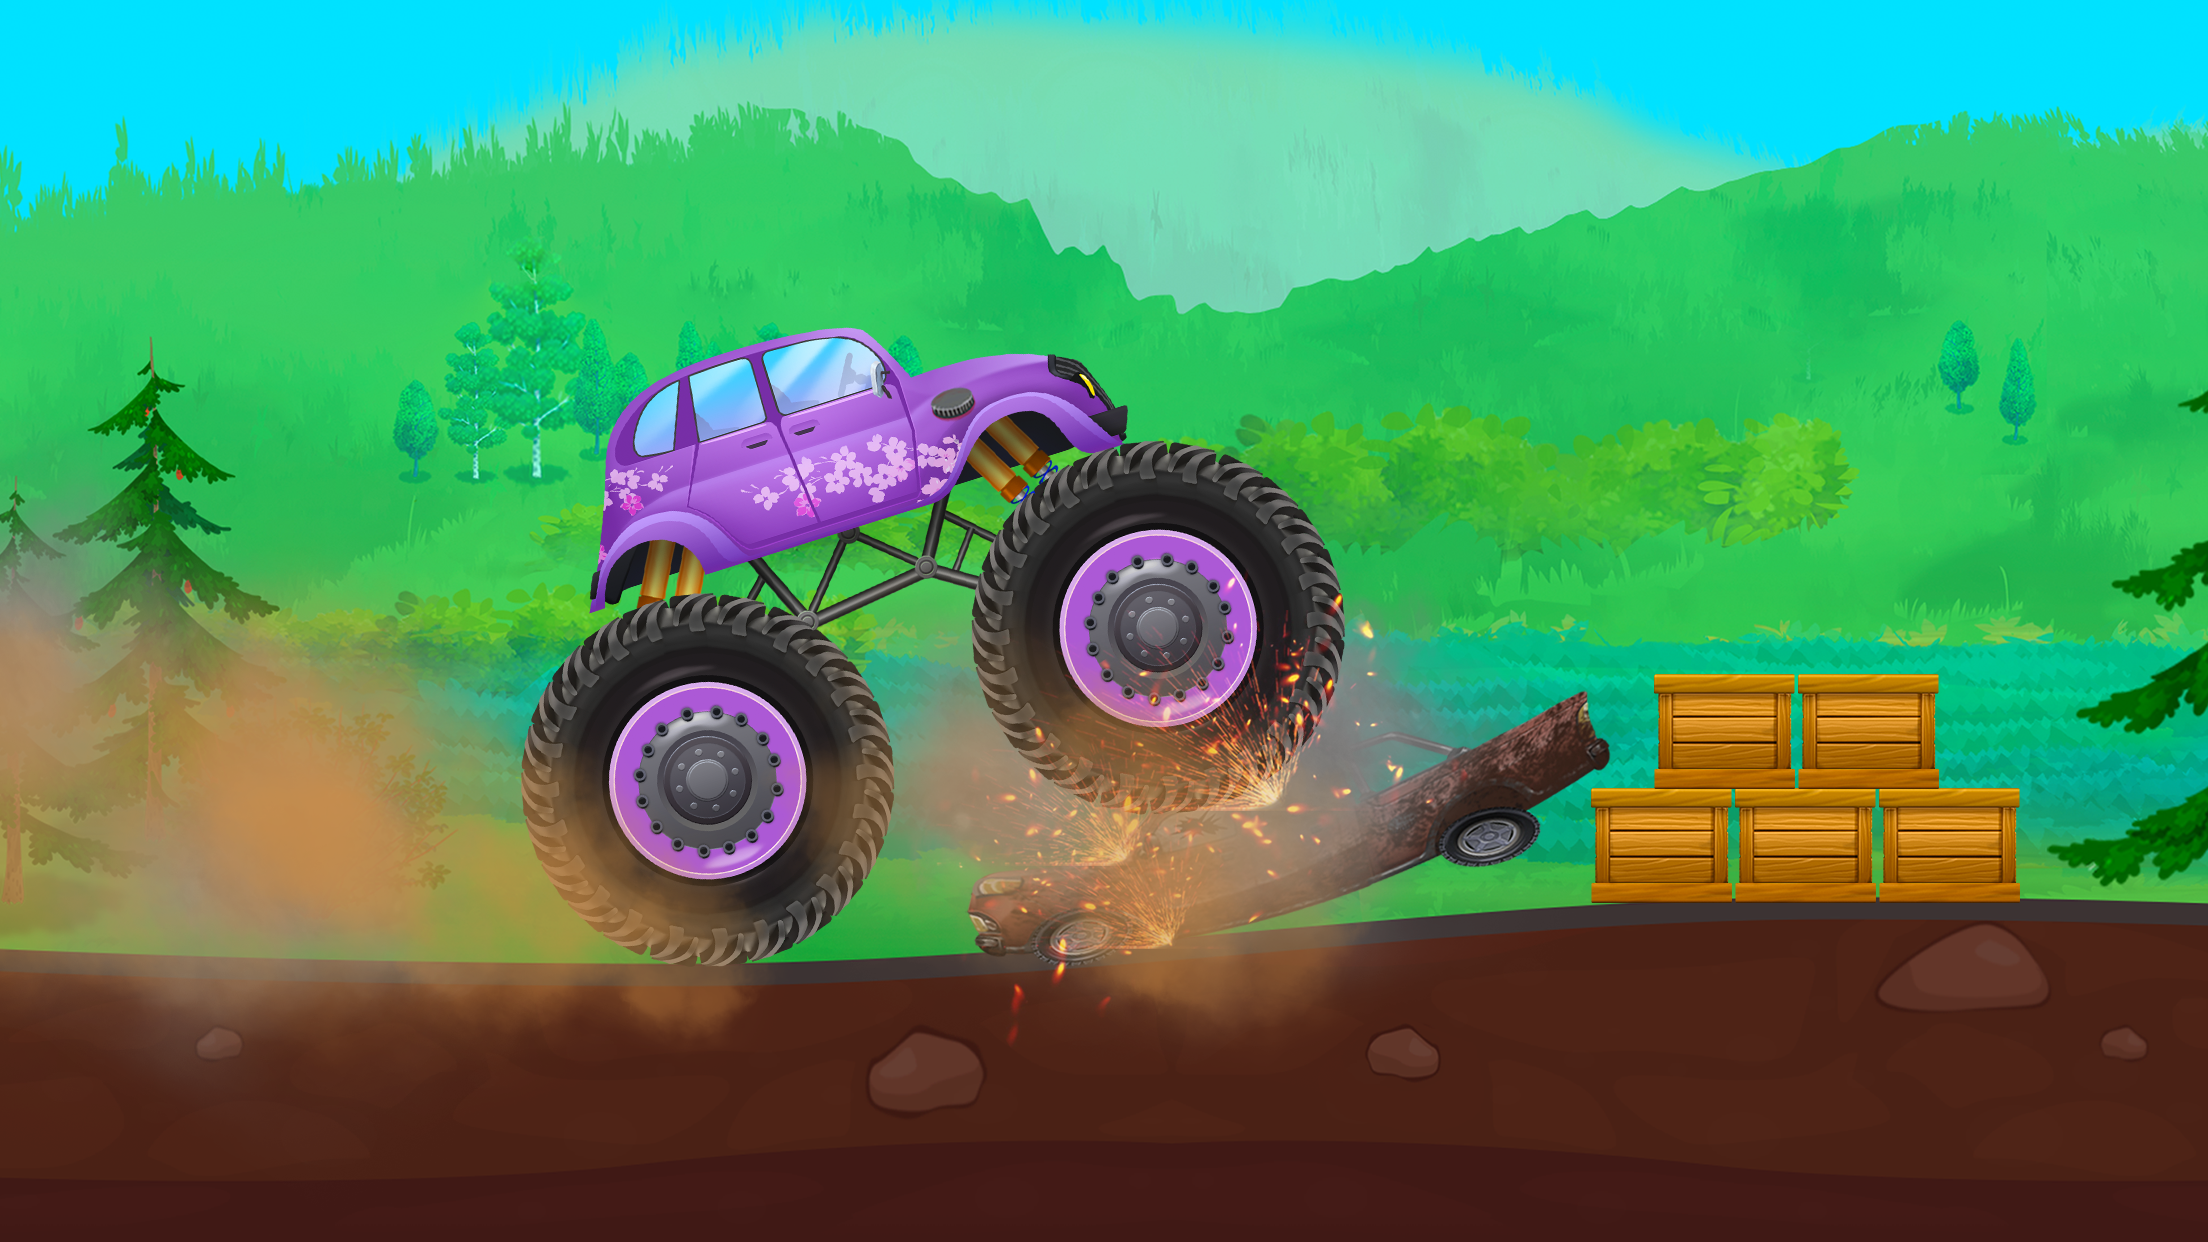 Screenshot 1 of 몬스터 트럭: 키즈를 위한 레이싱 게임 